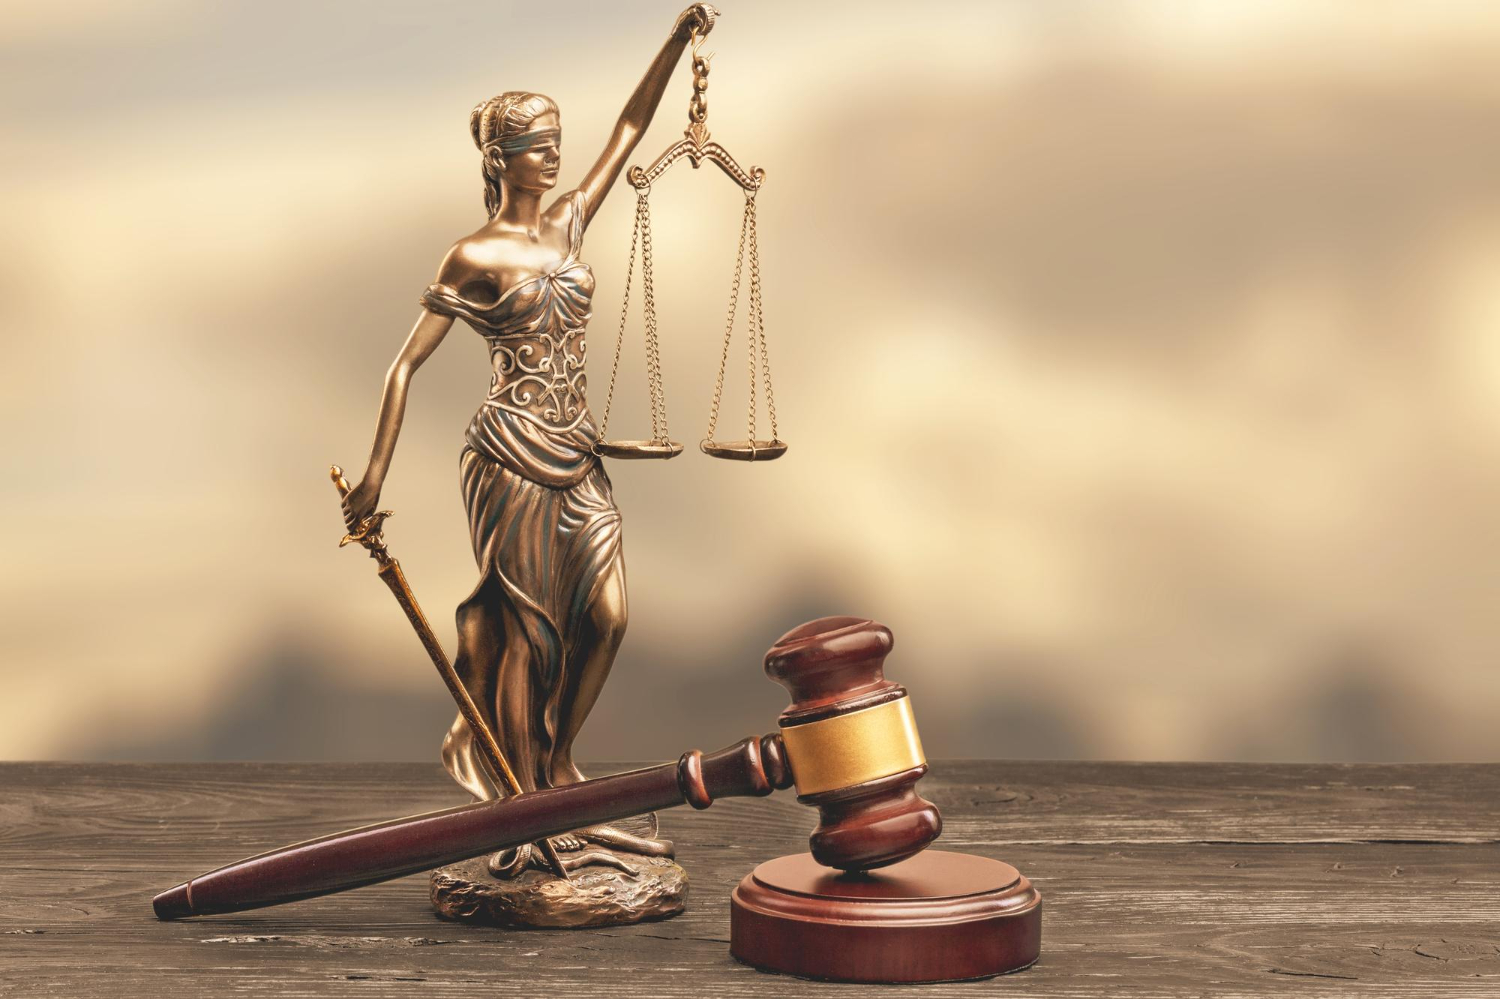 Reprezentare legală de calitate: Alegerea biroului de avocatură potrivit